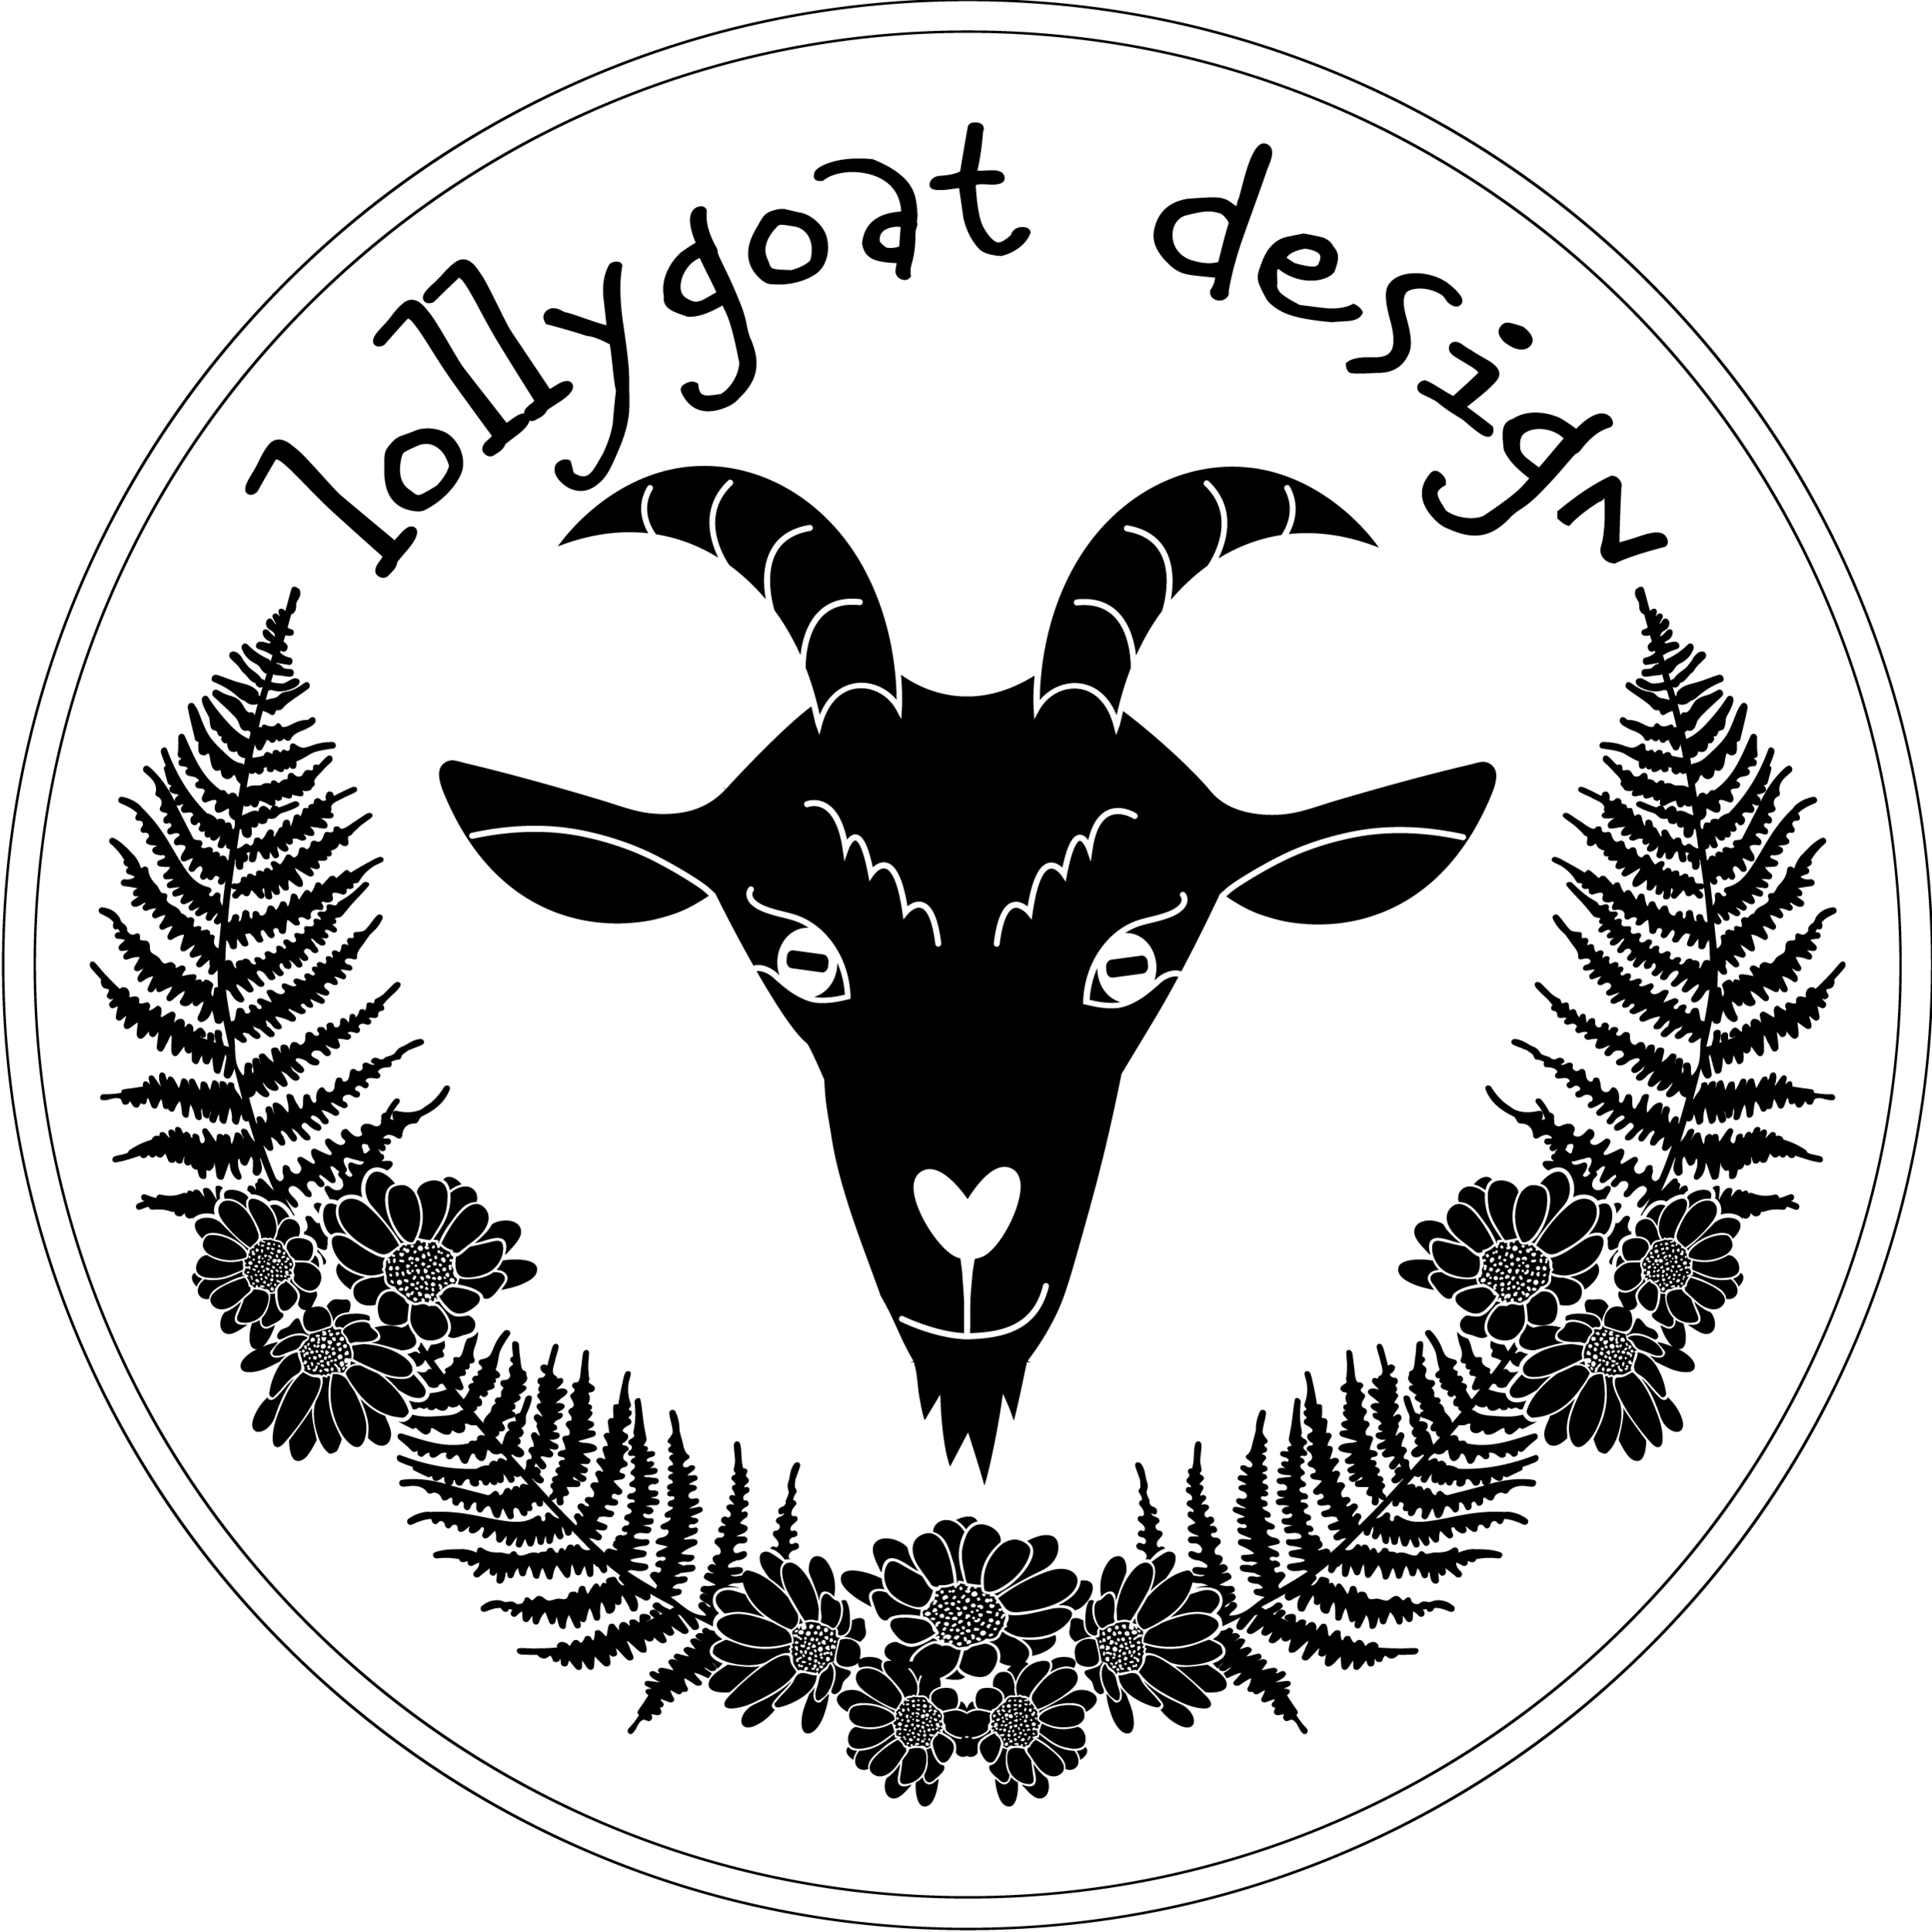 Lollygoat Design